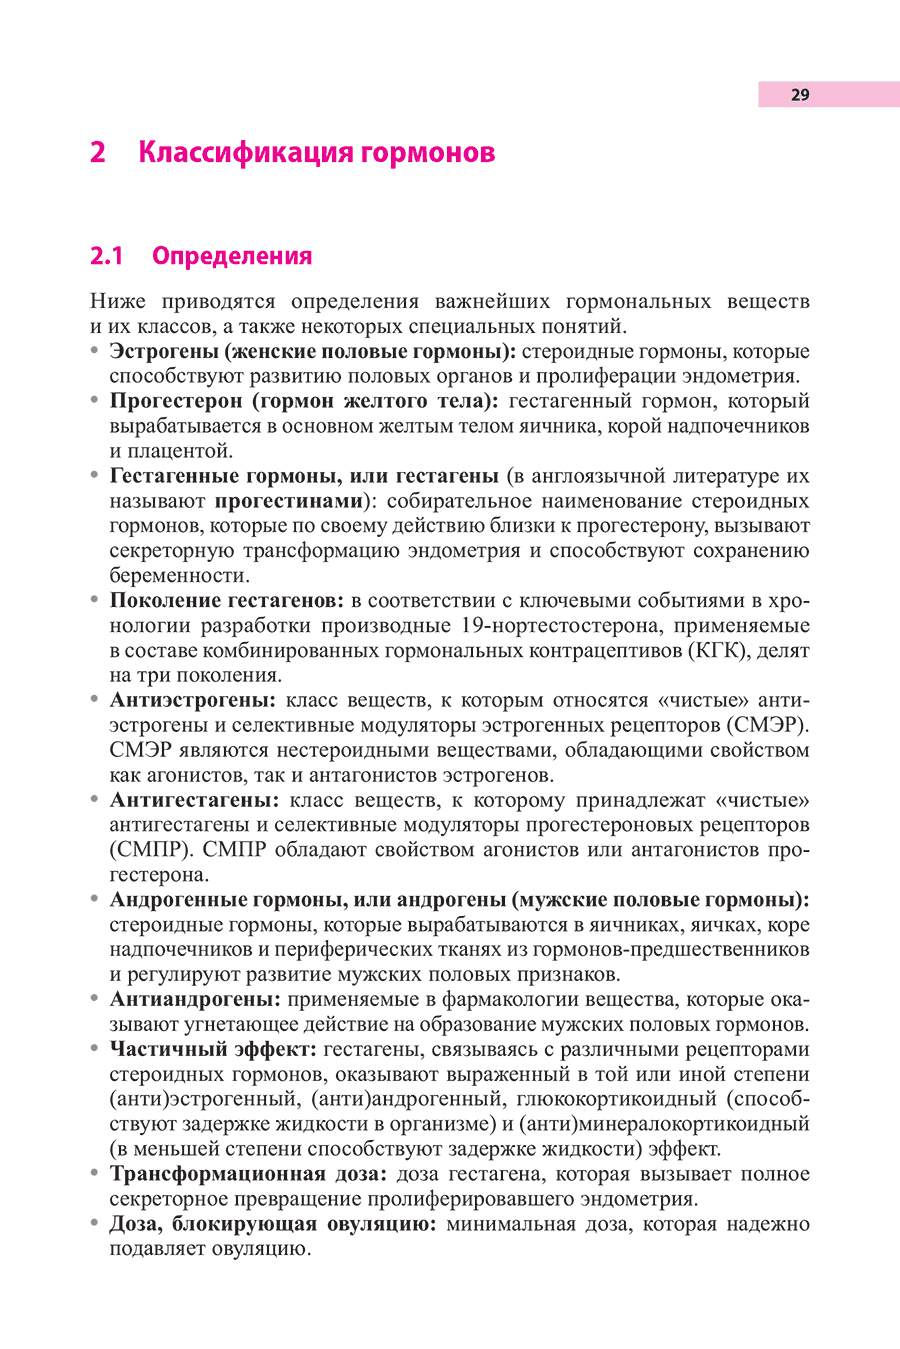 Пример страницы из книги "Гинекологическая эндокринология и репродуктивная медицина" - Михель фон Вольфф, Петра Штуте